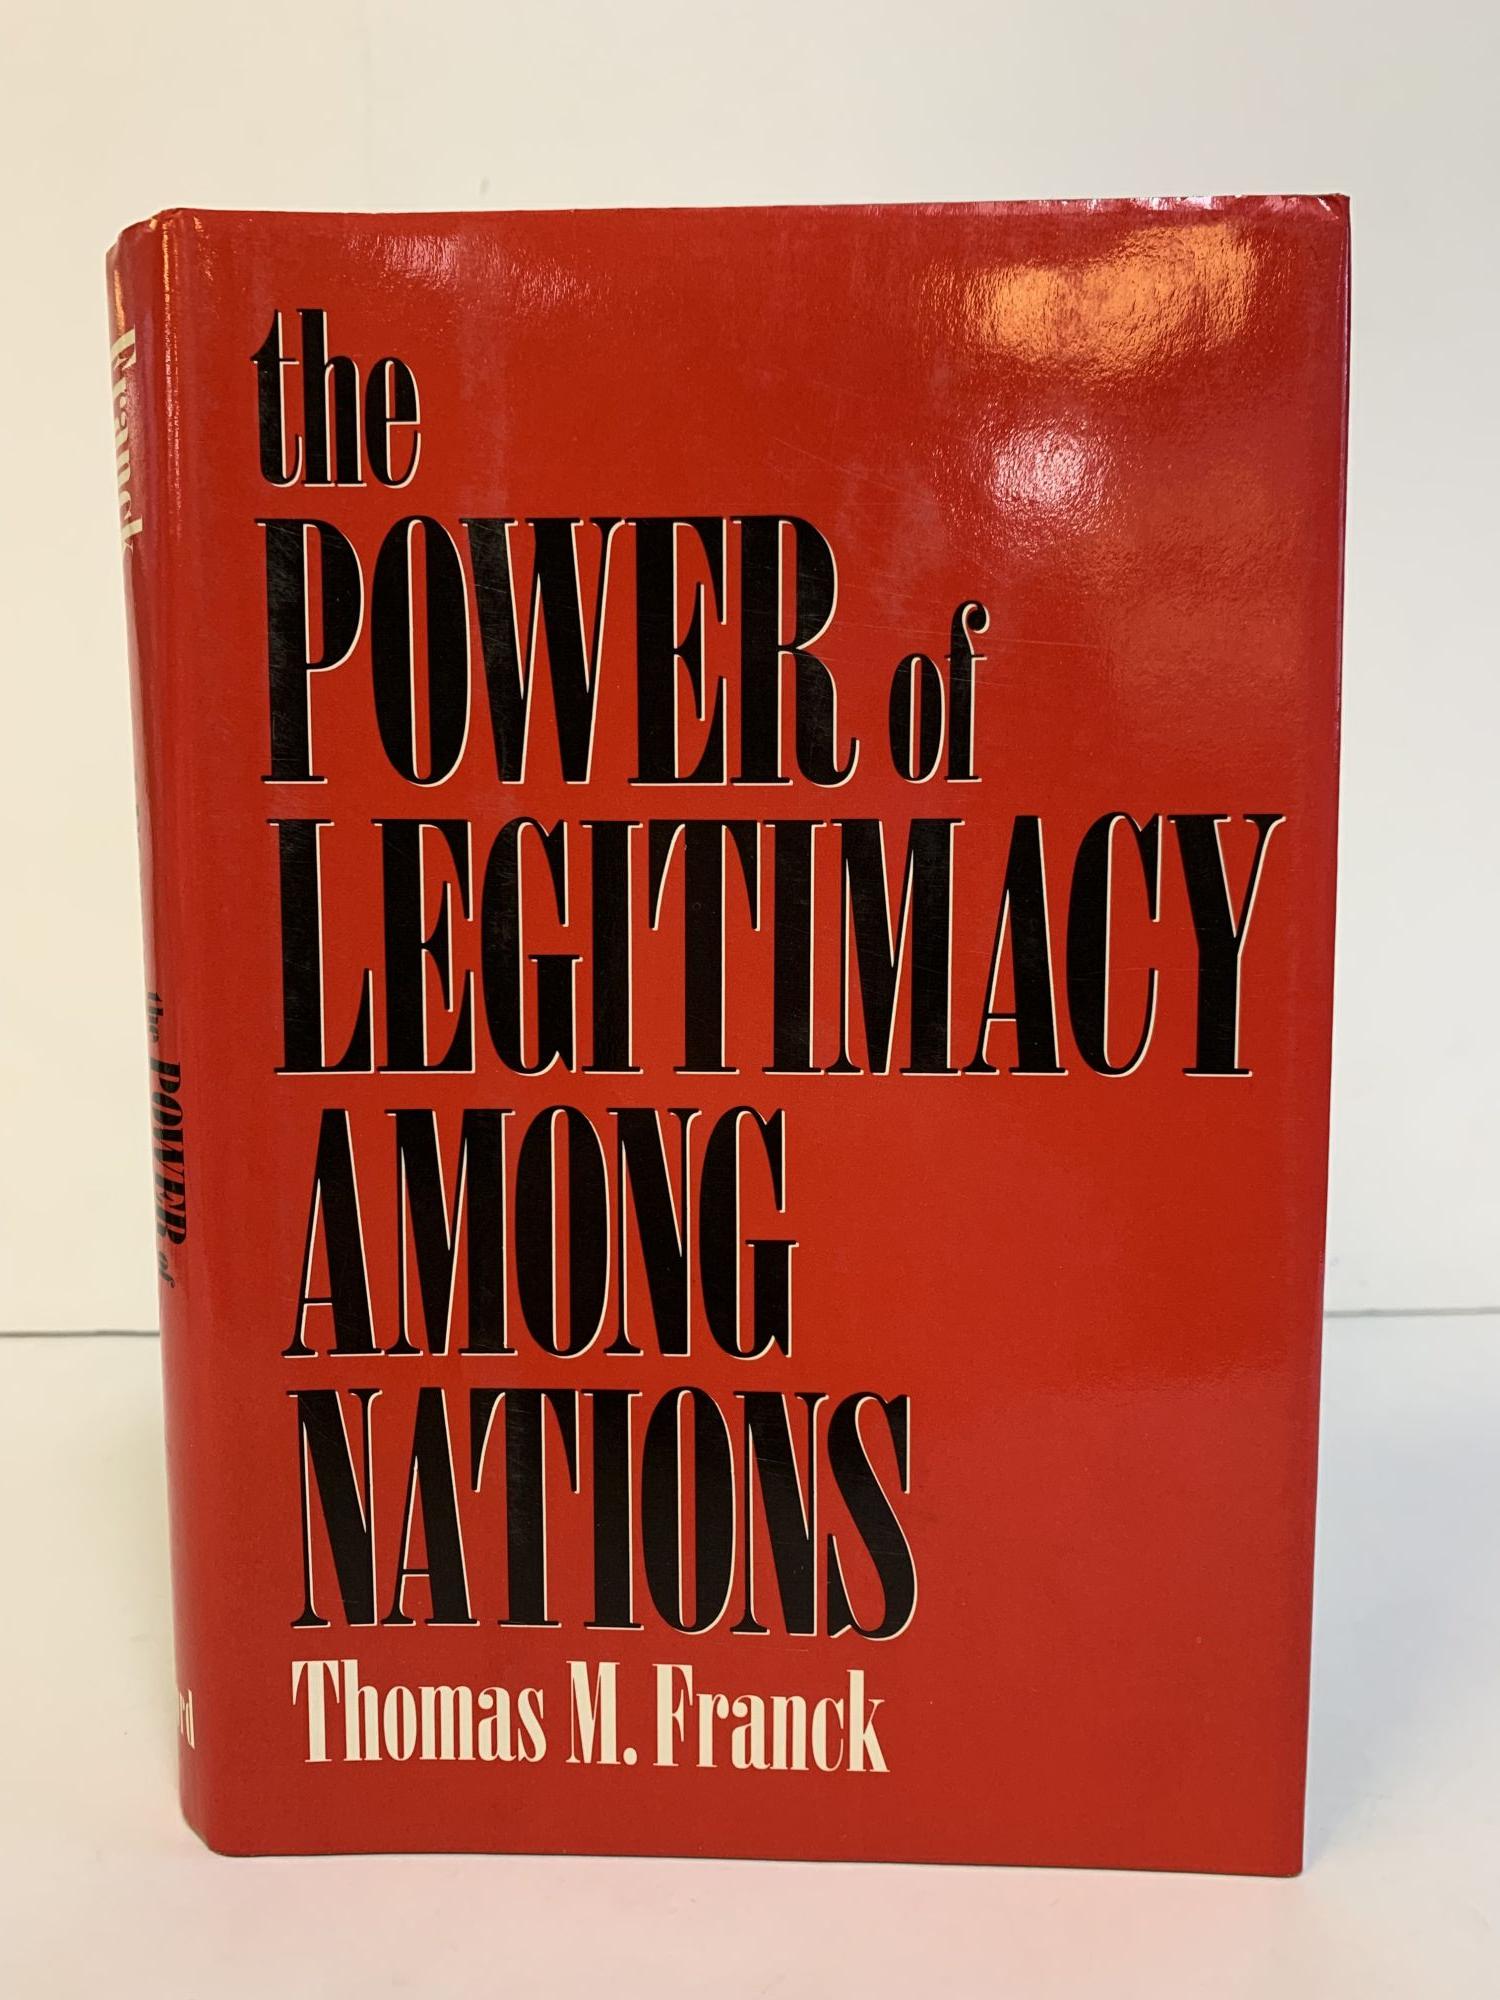 THE POWER OF LEGITIMACY AMONG NATIONS - Franck, Thomas M.